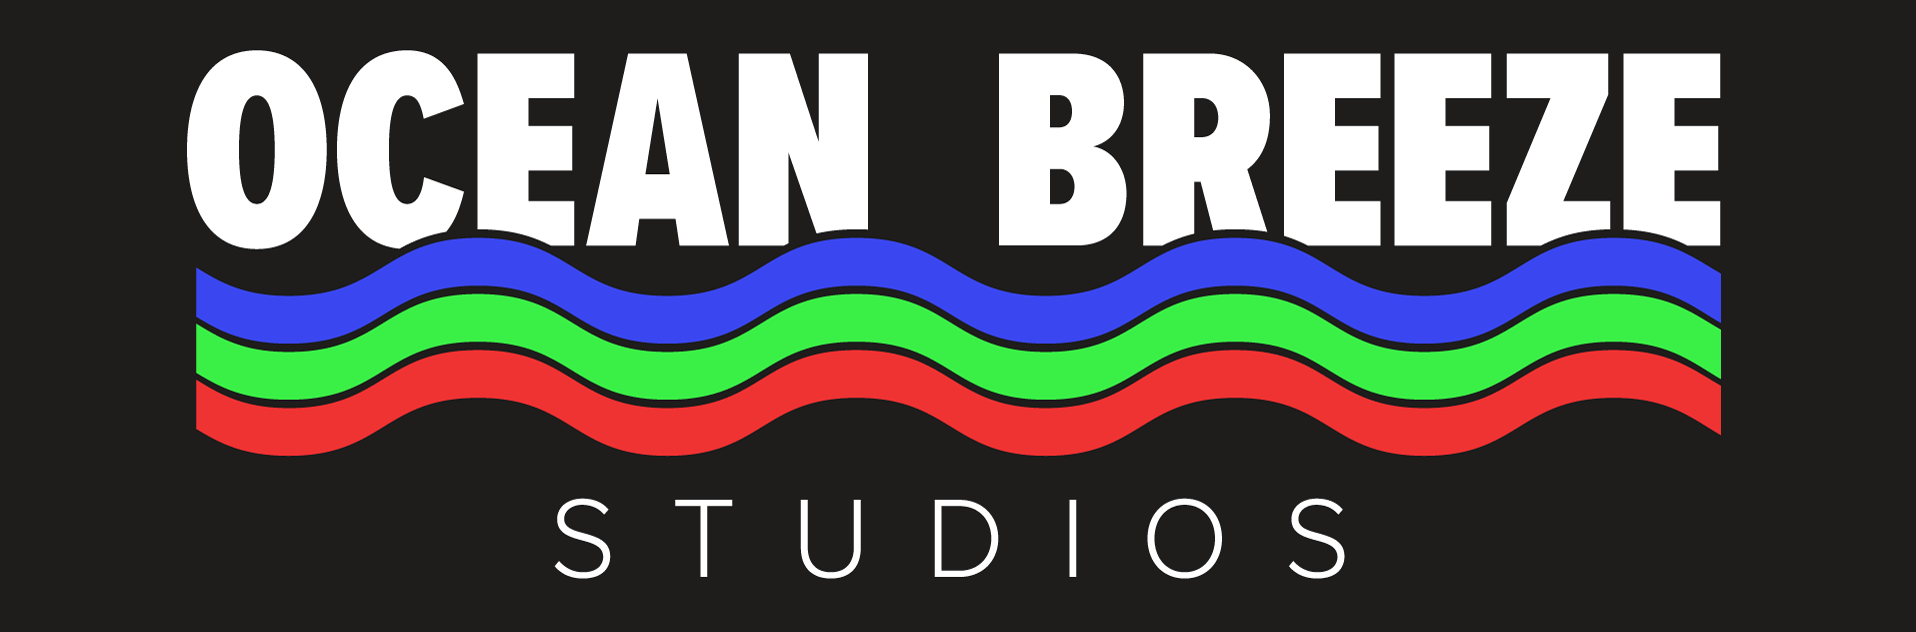 Ocean Breeze Studios - Logo.png